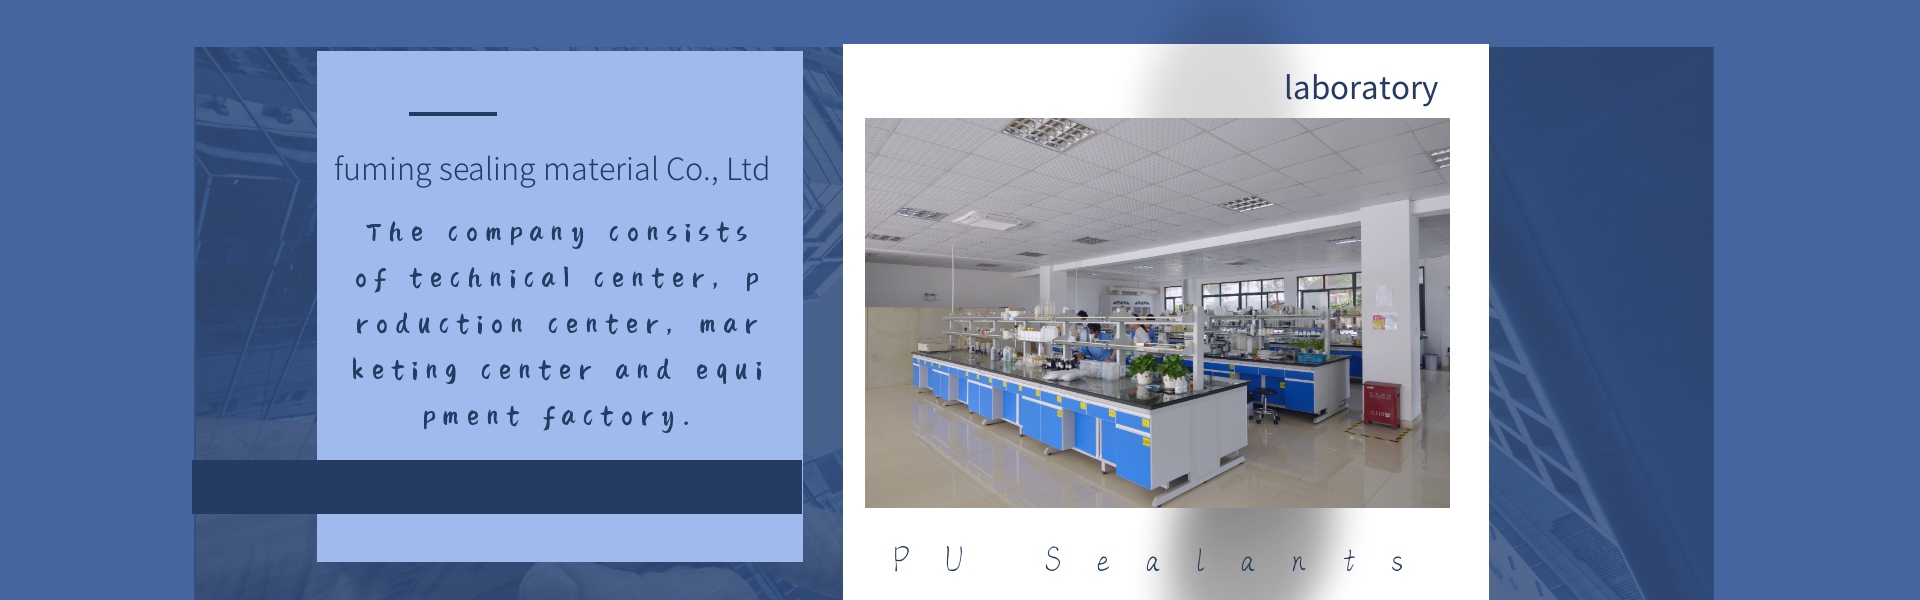 elektronikus cserepes ragasztó, pu tömítőanyagok, szűrő tömítőanyagok,Dongguan fuming sealing material Co., Ltd